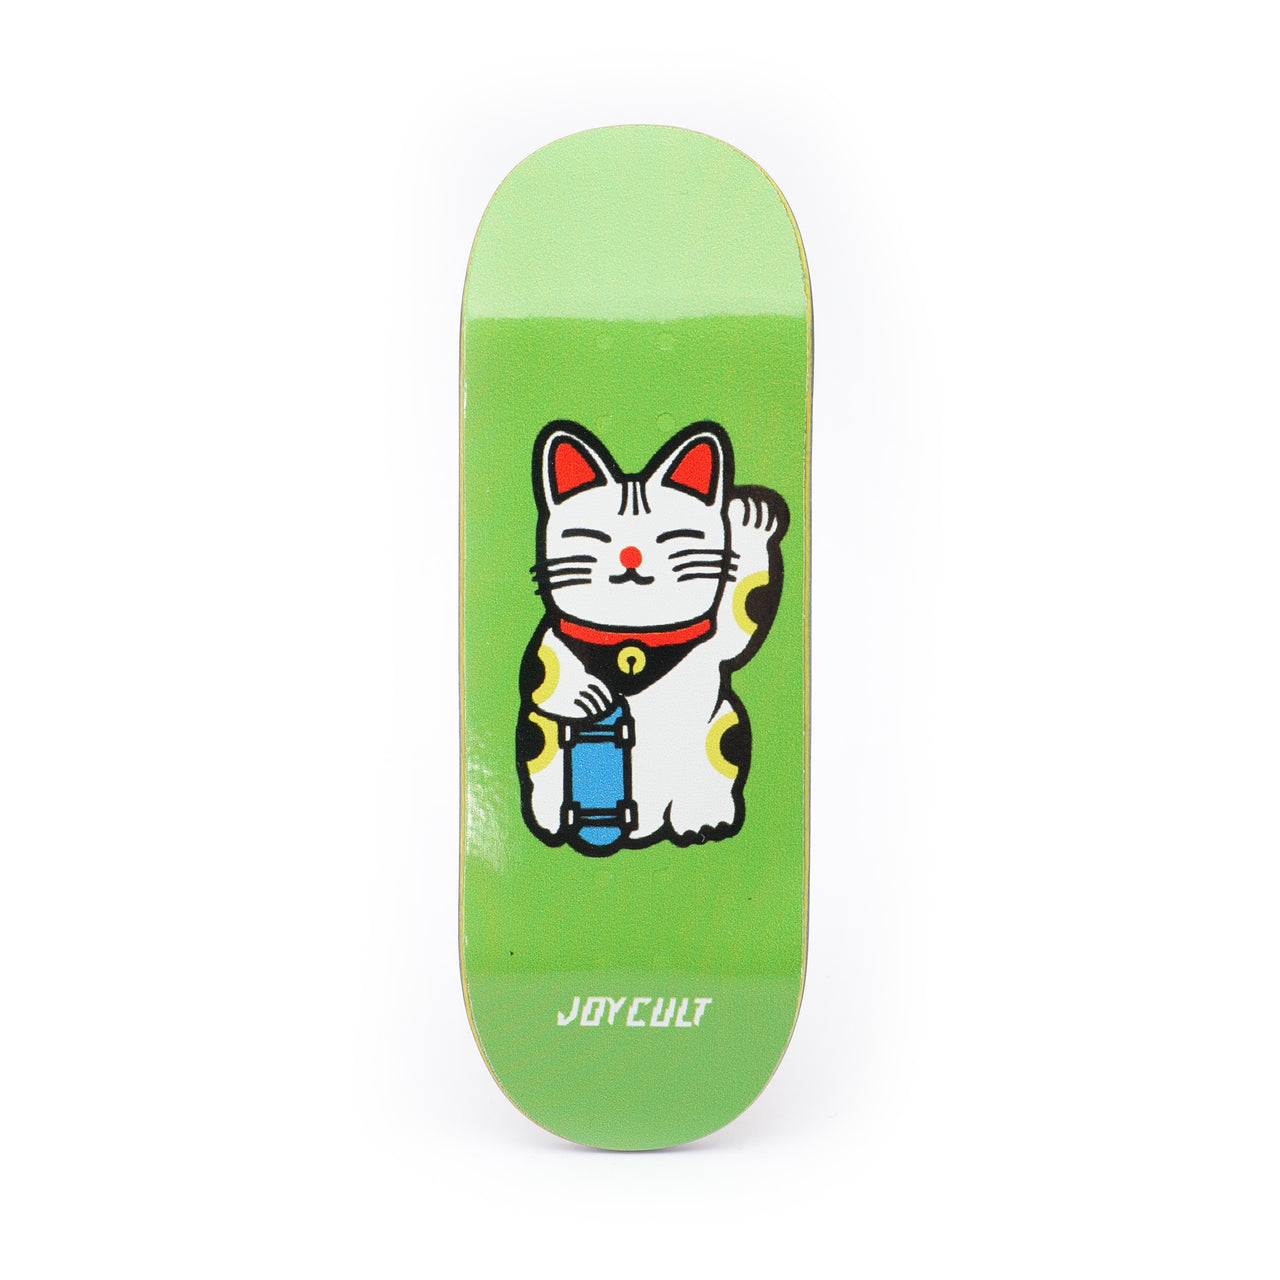 Joycult "Lucky Cat" Green Deck